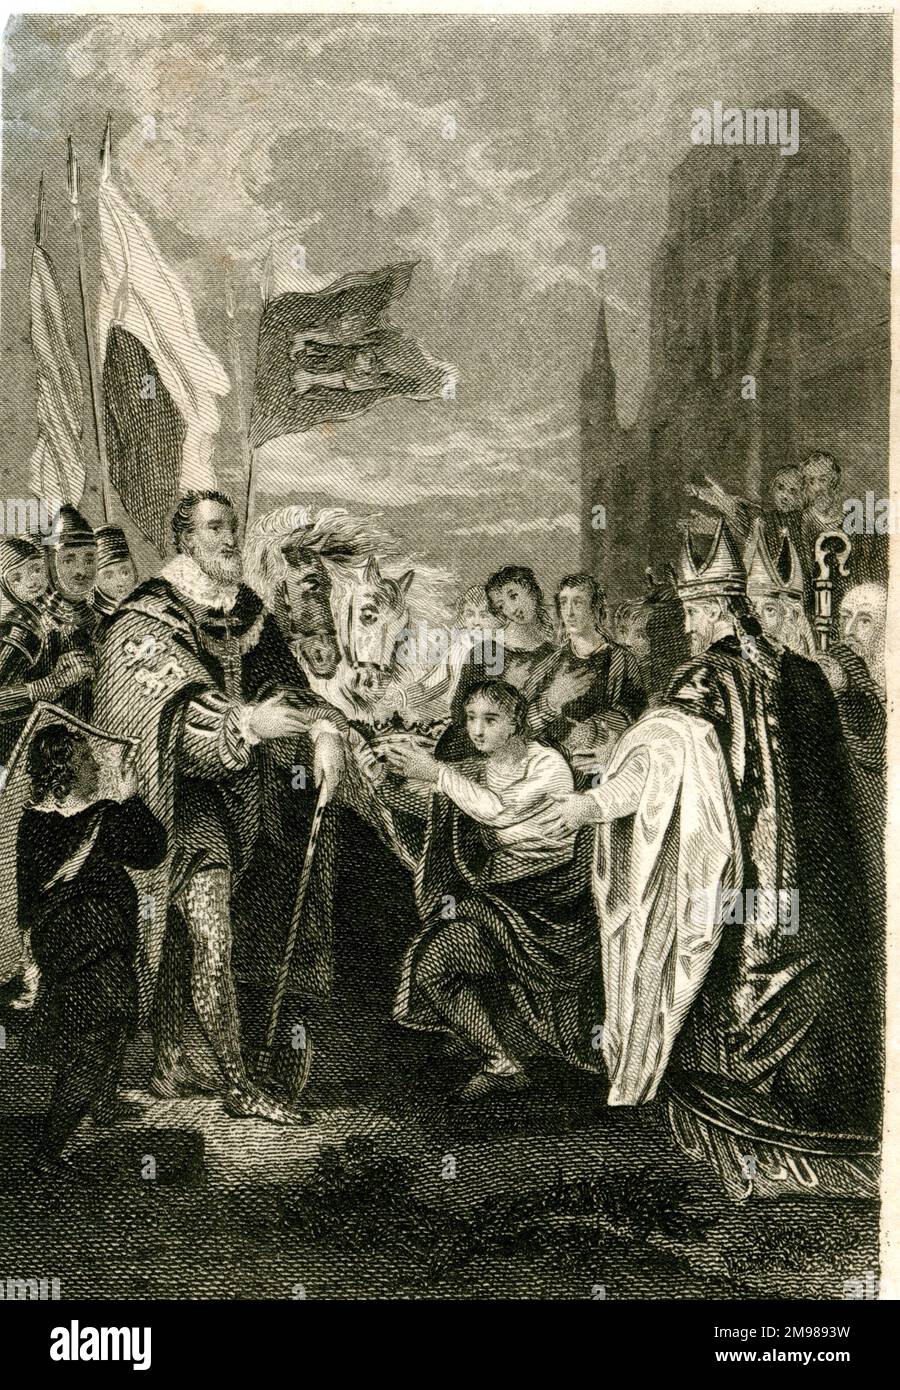 Guillermo I el Conquistador (1027-1087) recibiendo la corona después de ganar la Batalla de Hastings. Foto de stock